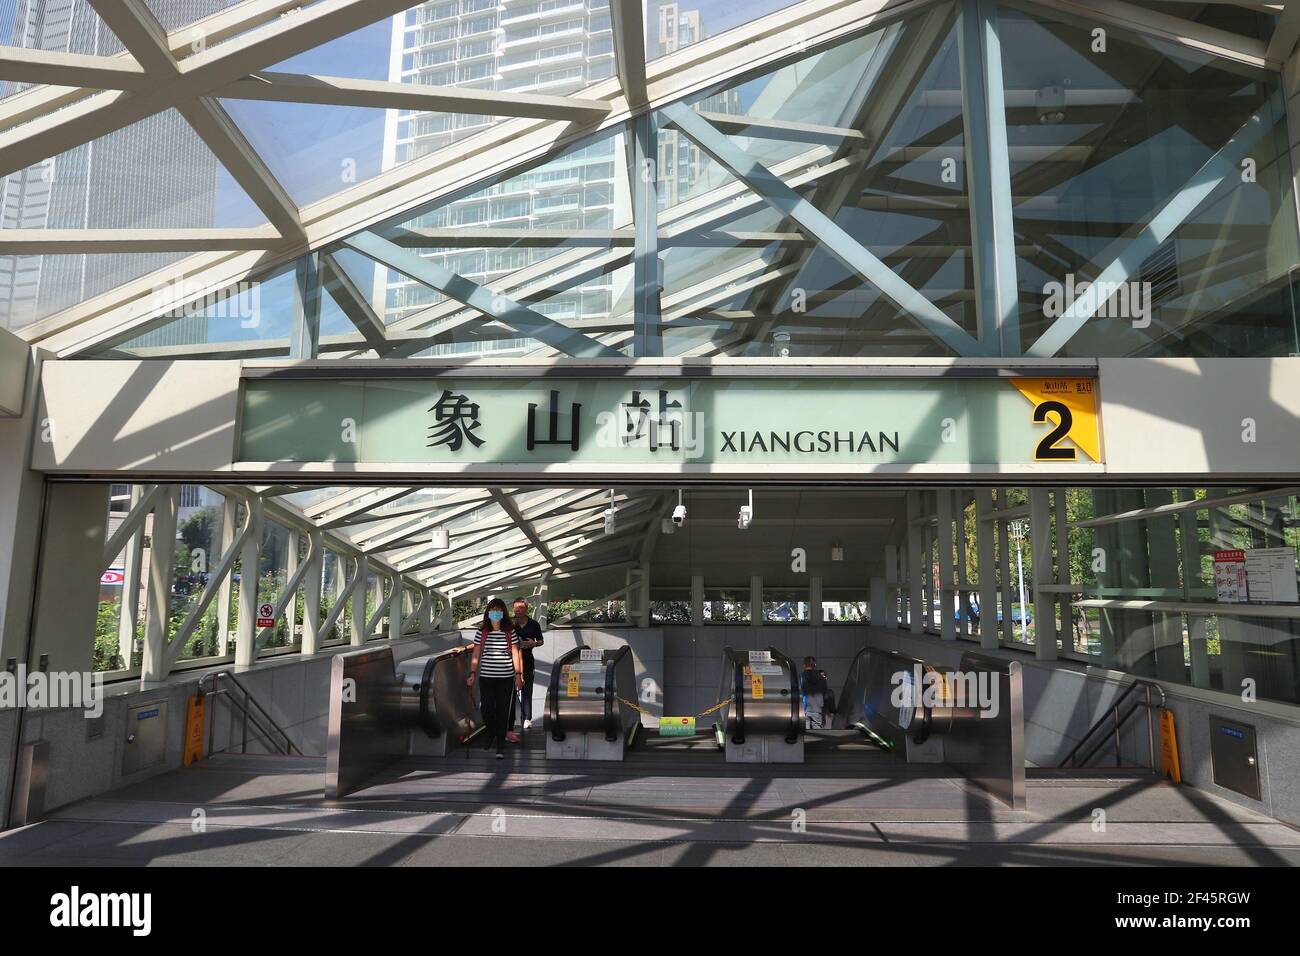 TAIPEI, TAÏWAN - 3 DÉCEMBRE 2018 : sortie de la station MRT de Xiangshan, Taipei. Taipei Mass Rapid Transit (MRT), dont le nom est Taipei Metro, dessert 746 kilomètres Banque D'Images